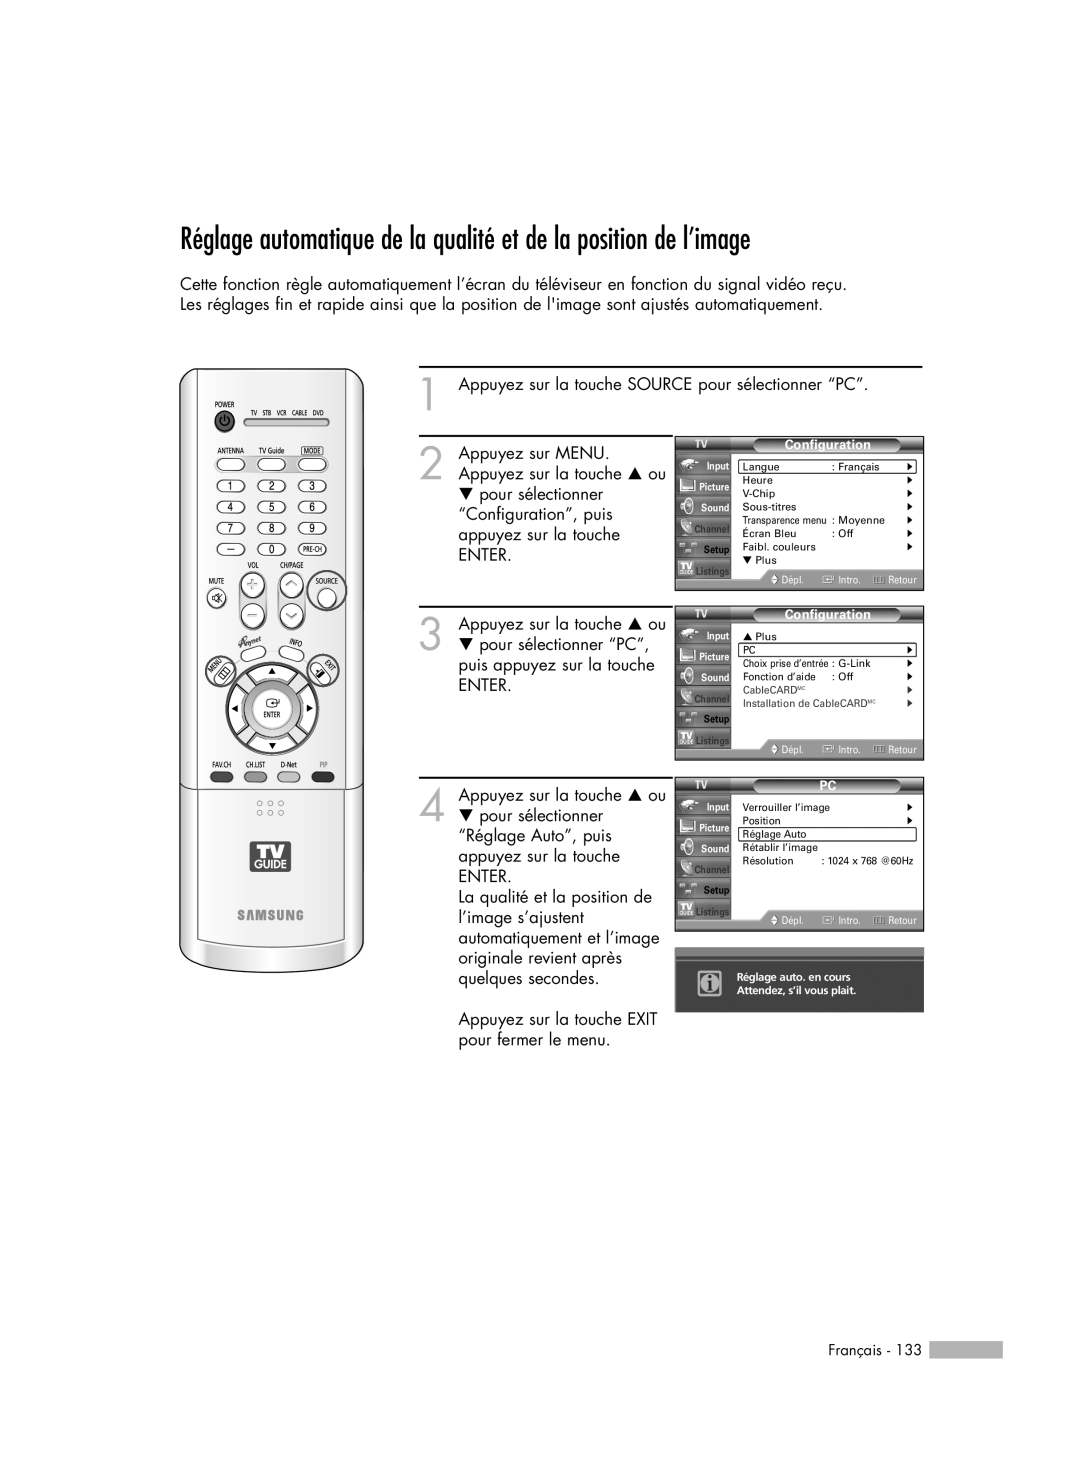 Samsung HL-R5078W Réglage automatique de la qualité et de la position de l’image, Français, Configuration, Dépl, Intro 